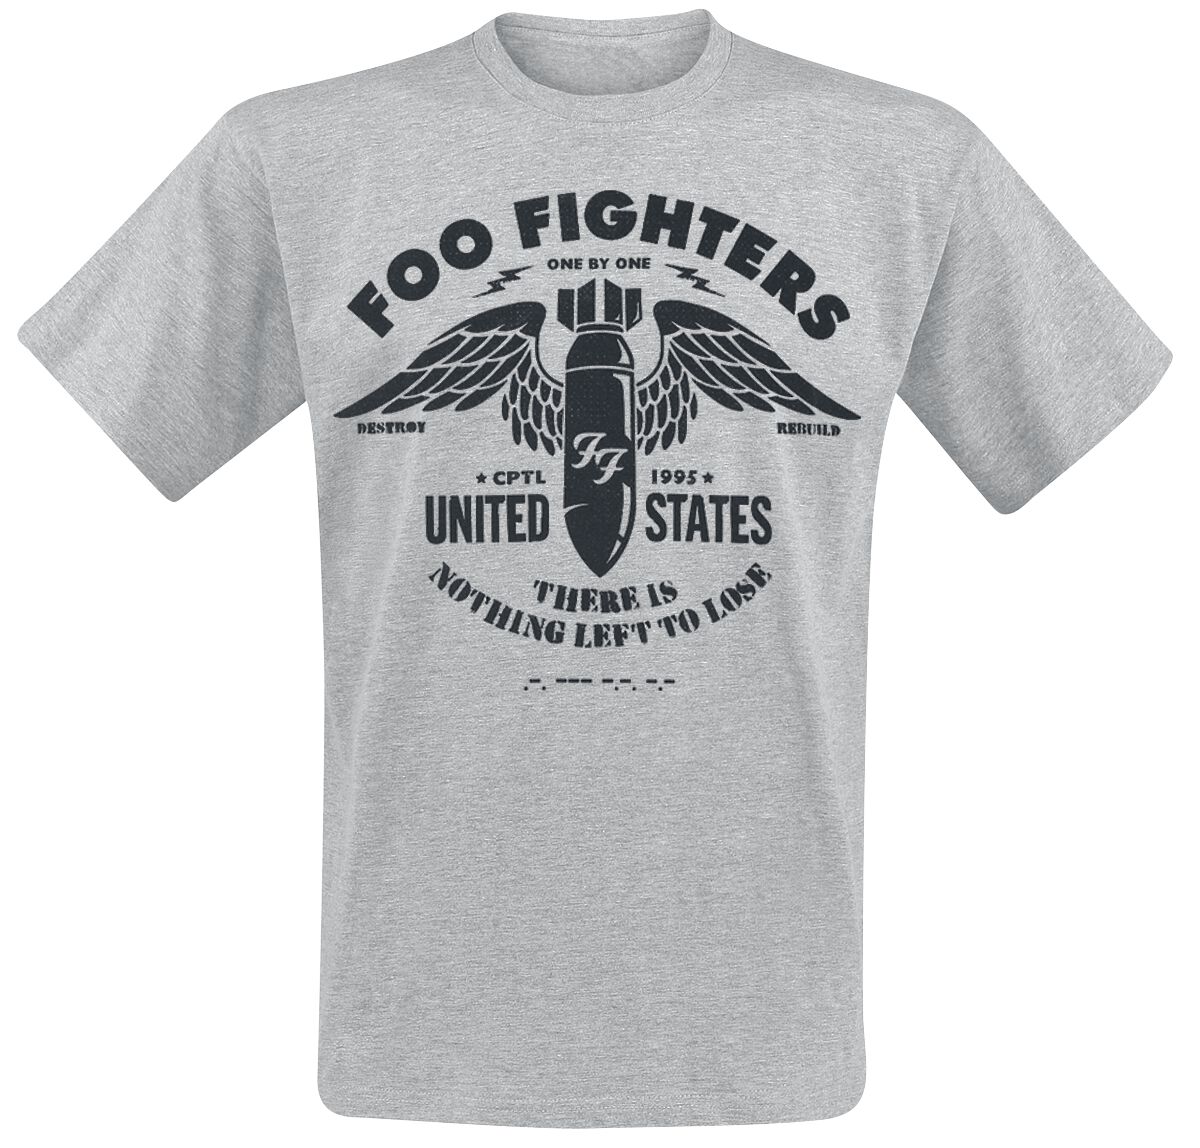 Foo Fighters T-Shirt - Stencil - S bis XXL - für Männer - Größe S - hellgrau meliert  - Lizenziertes Merchandise!